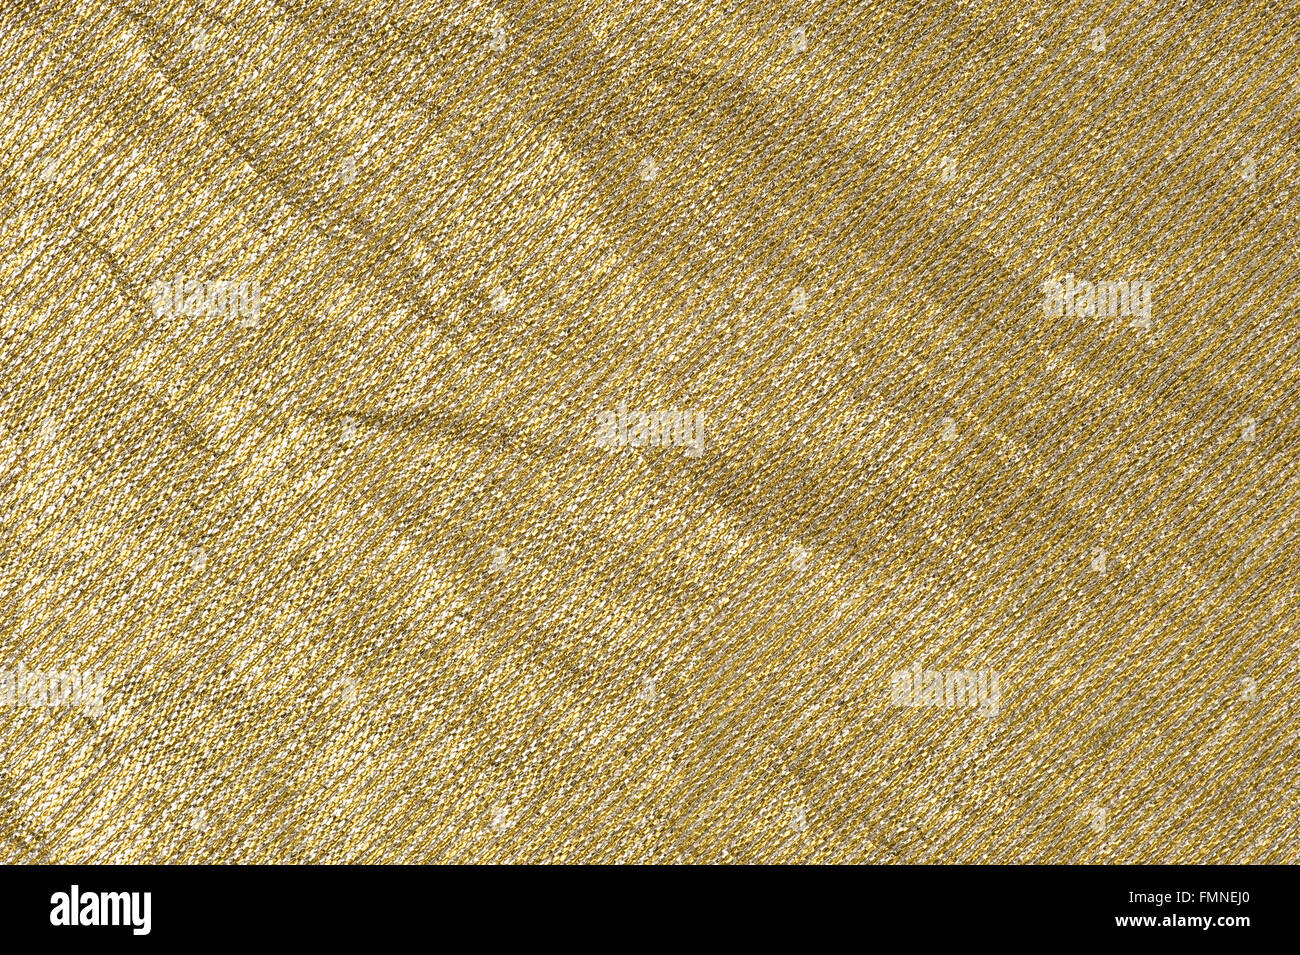 Tela dorada metalizada fotografías e imágenes de alta resolución - Alamy